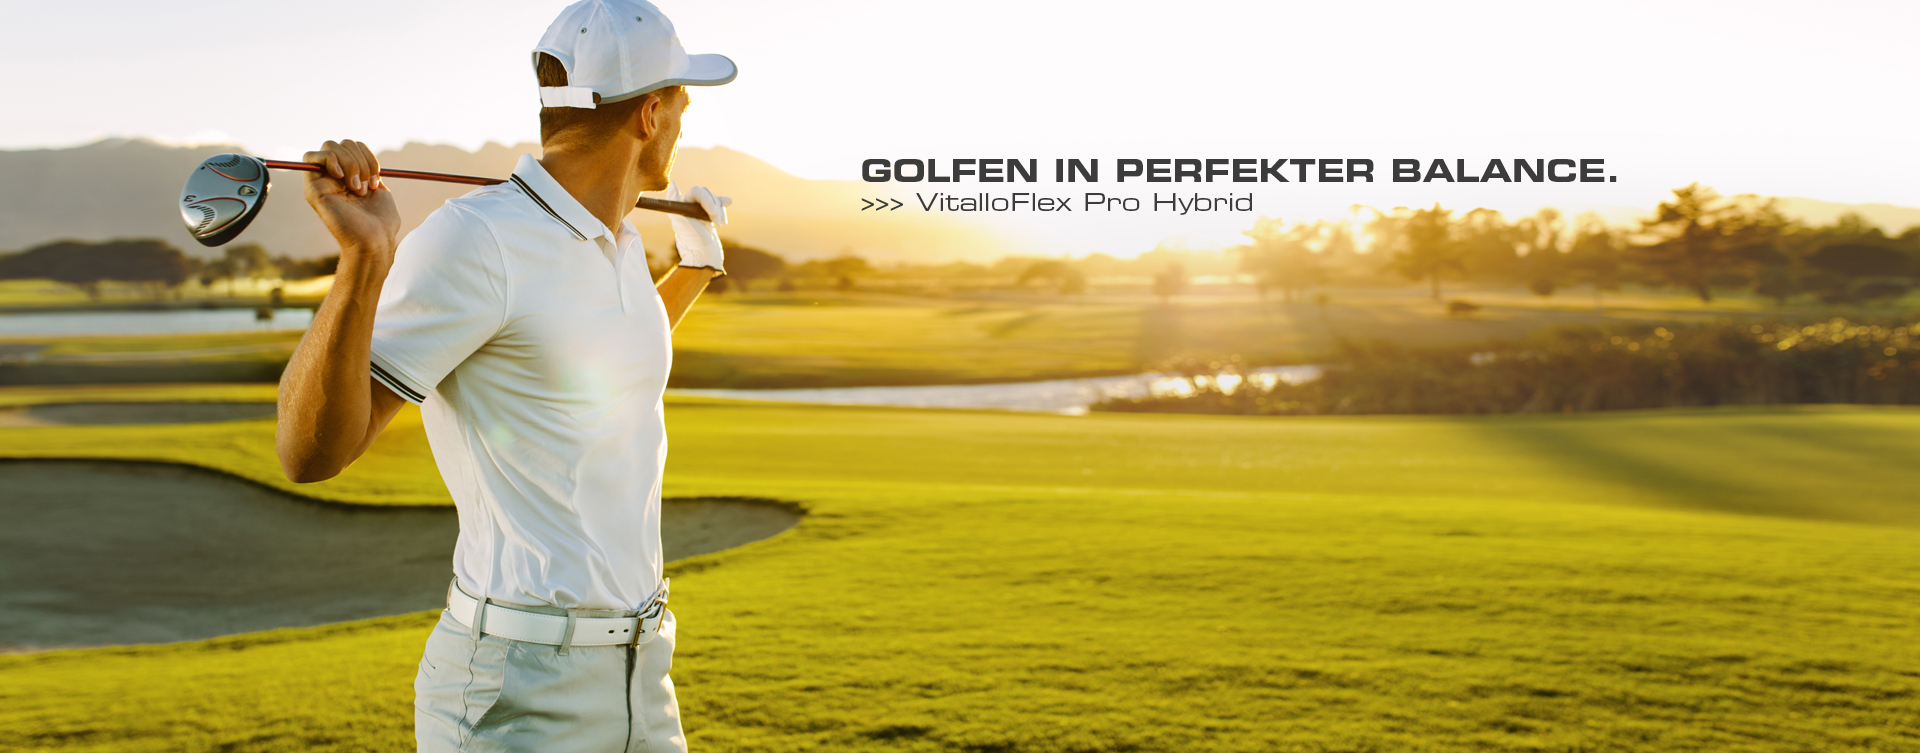 Erst die perfekte Balance des Körpers ermöglicht ein besseres Golfen. Der VitalloFlex Pro Hybrid ist die konsequente Umsetzung aller Bedürfnisse, die Fuß und Körper beim Golfsport an einen Schuh stellen und die Summe all unserer Erfahrungen in jedem Detail.